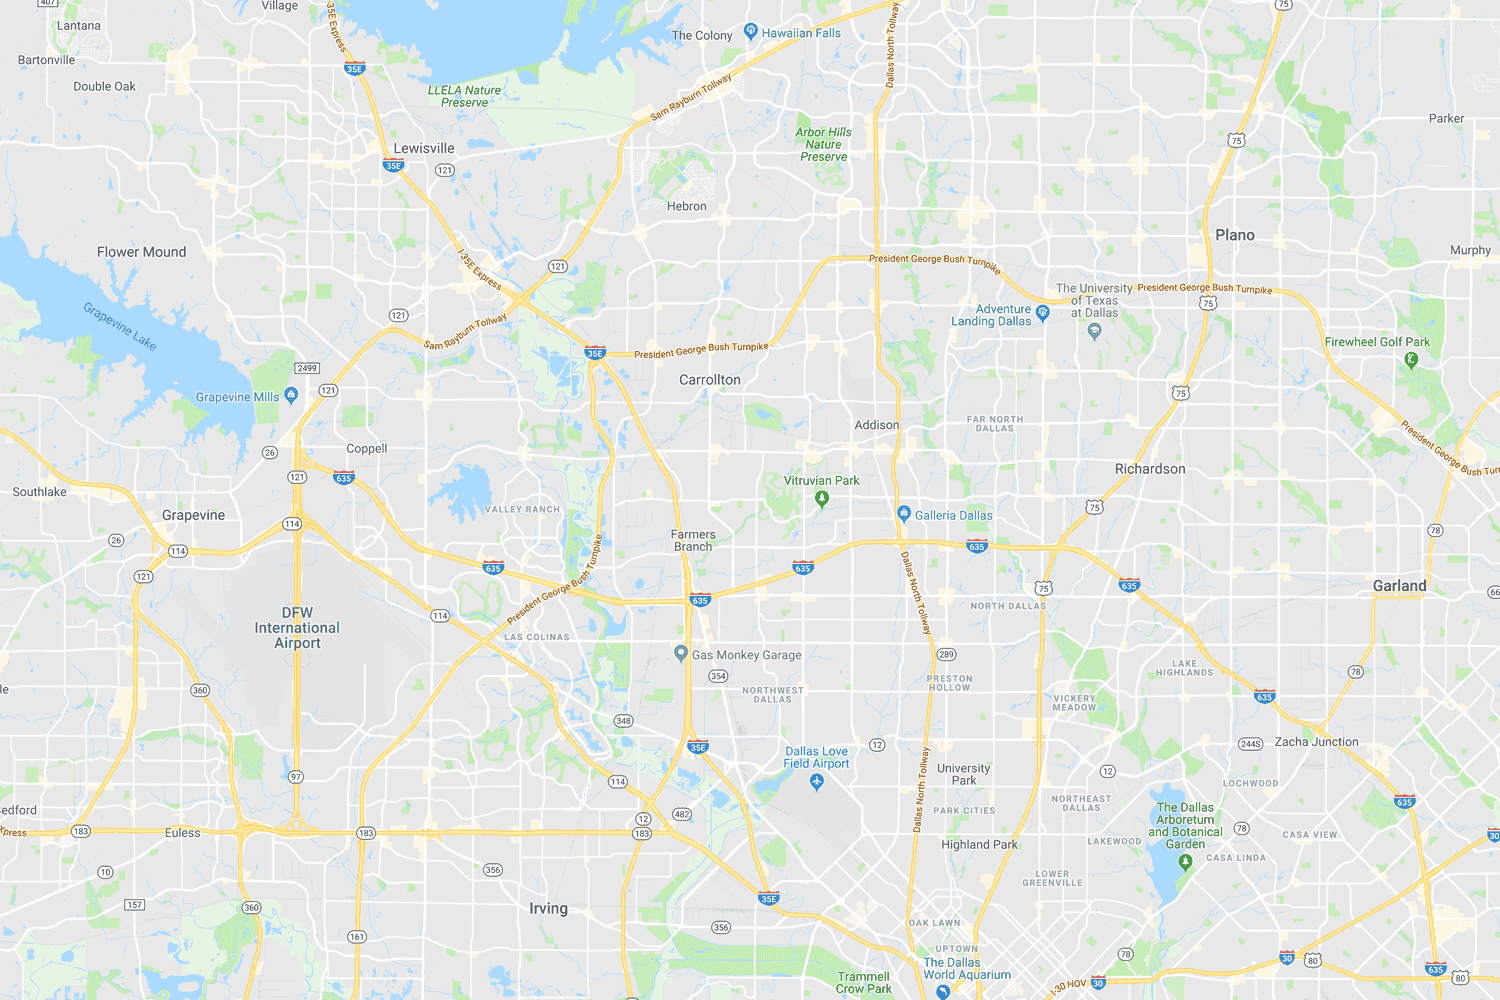 Dallas area TPW locations